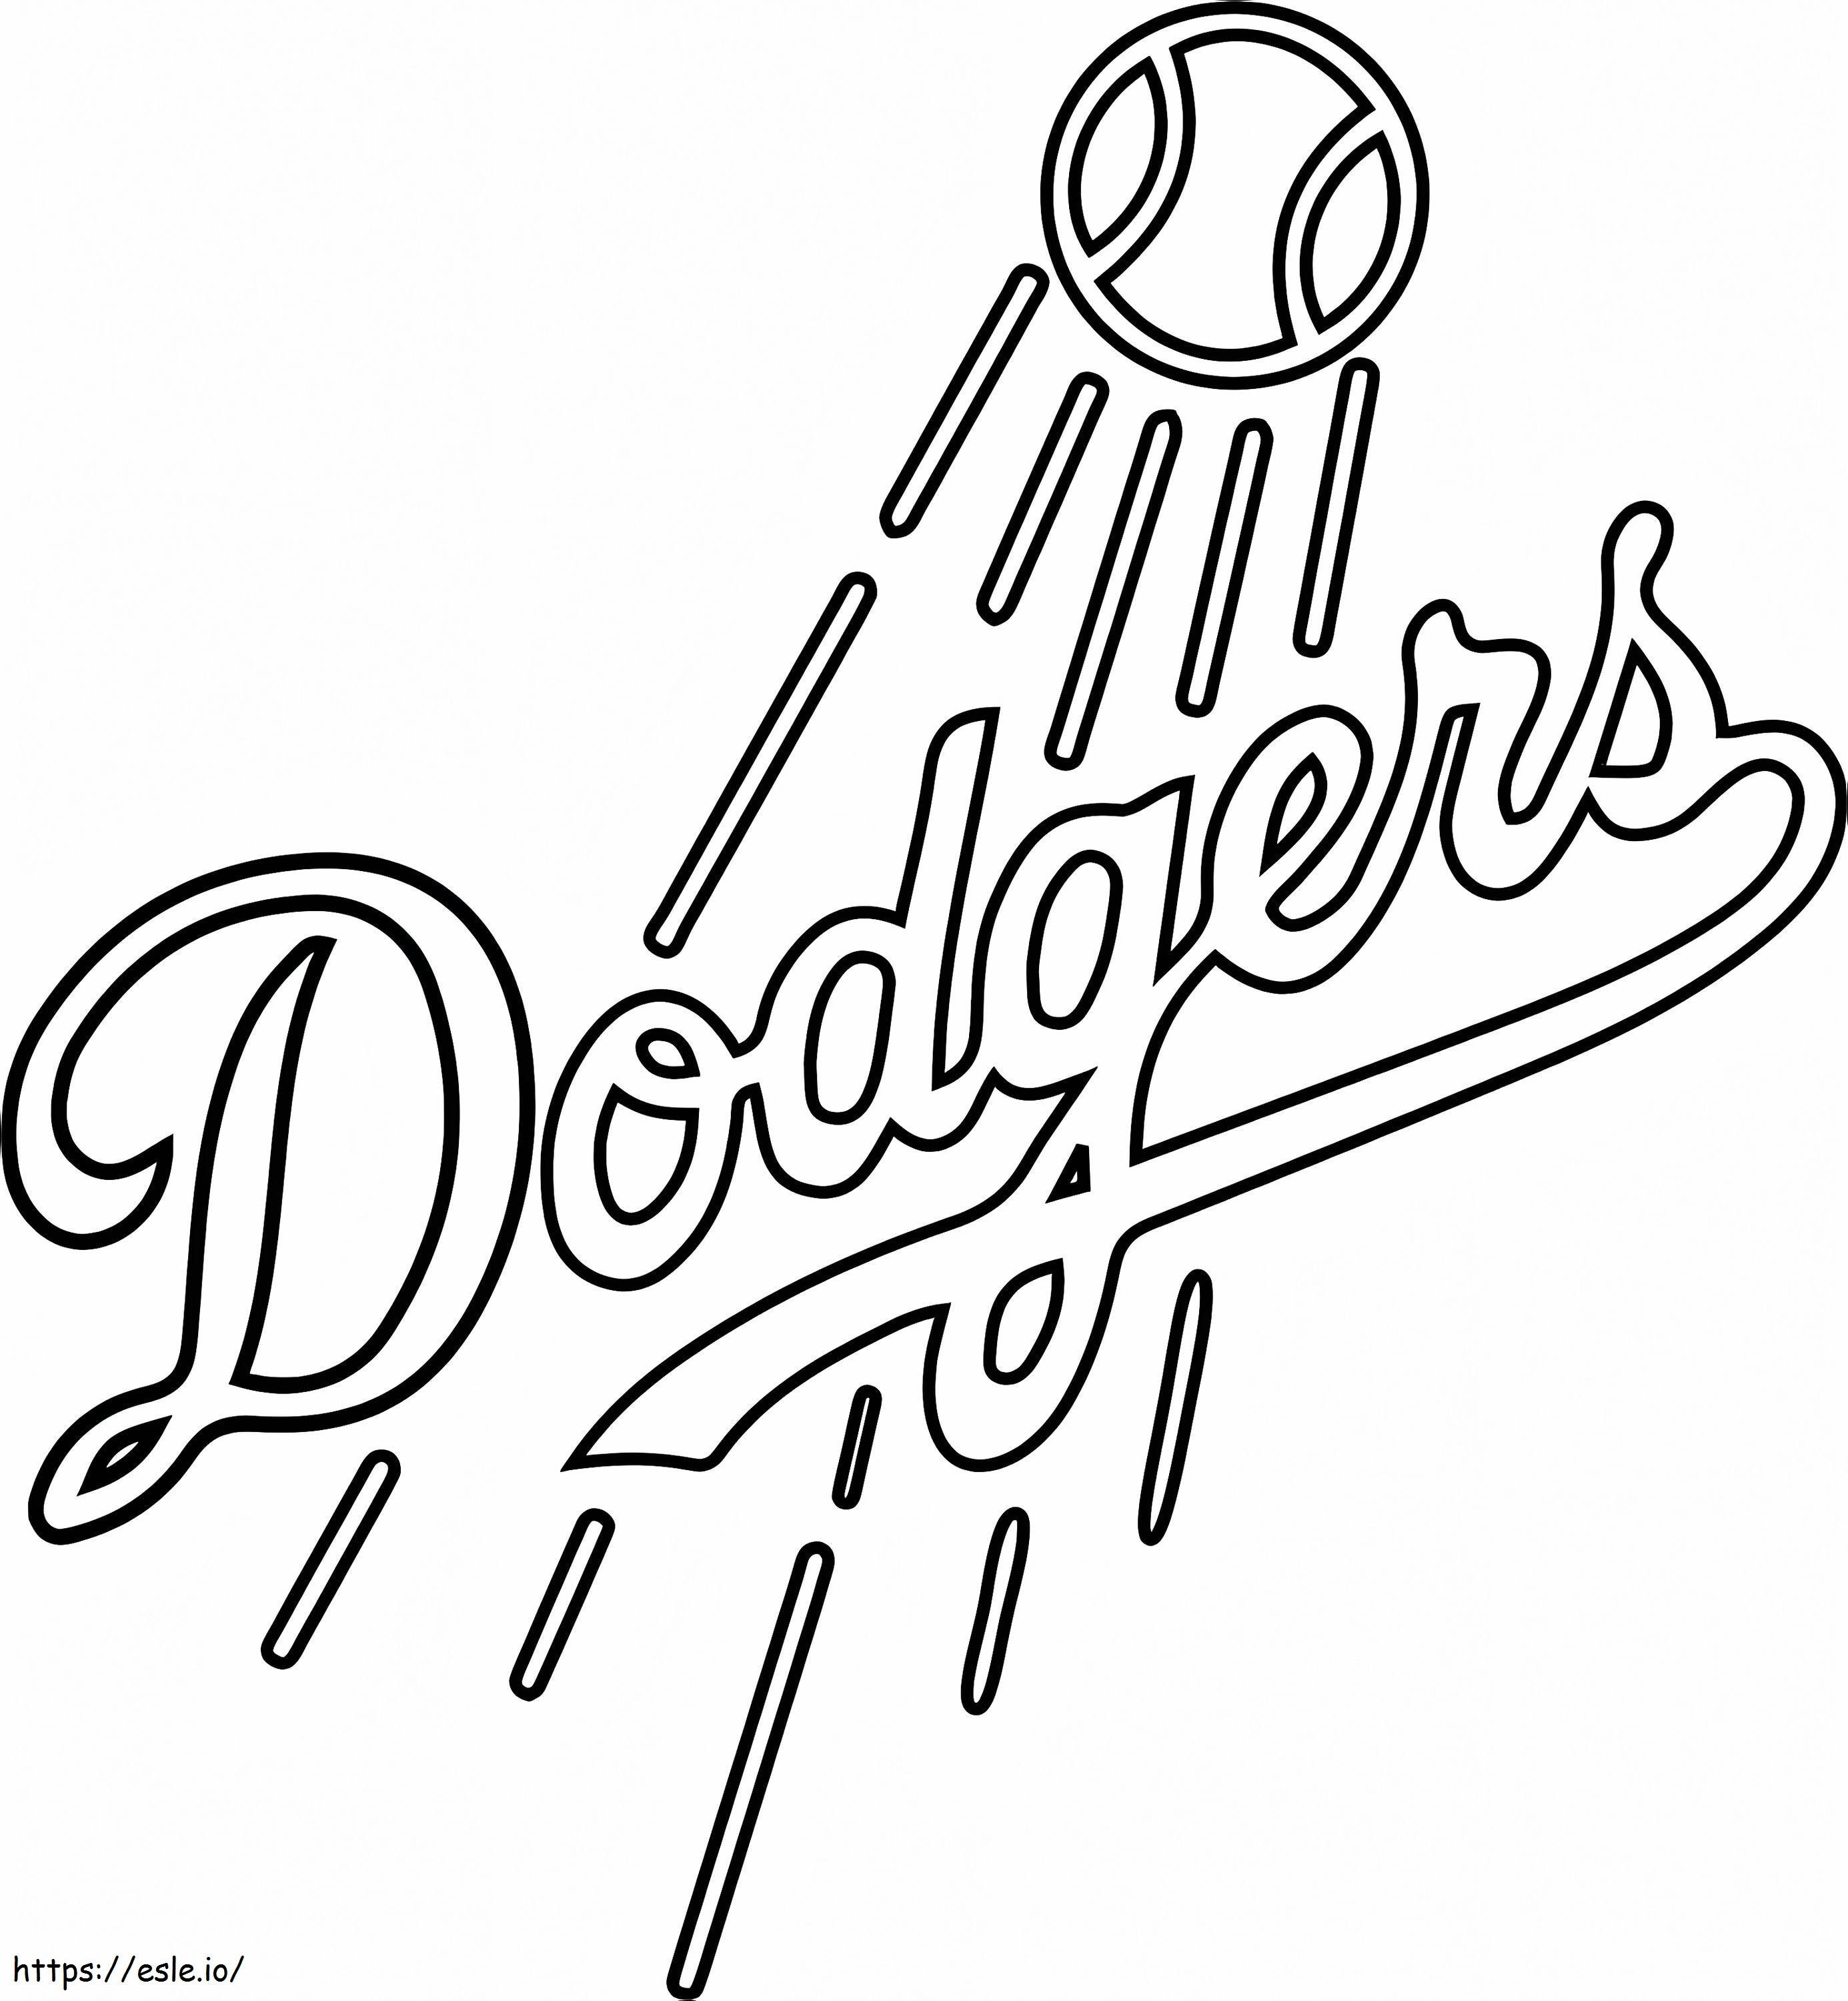 Logo dei Los Angeles Dodgers da colorare